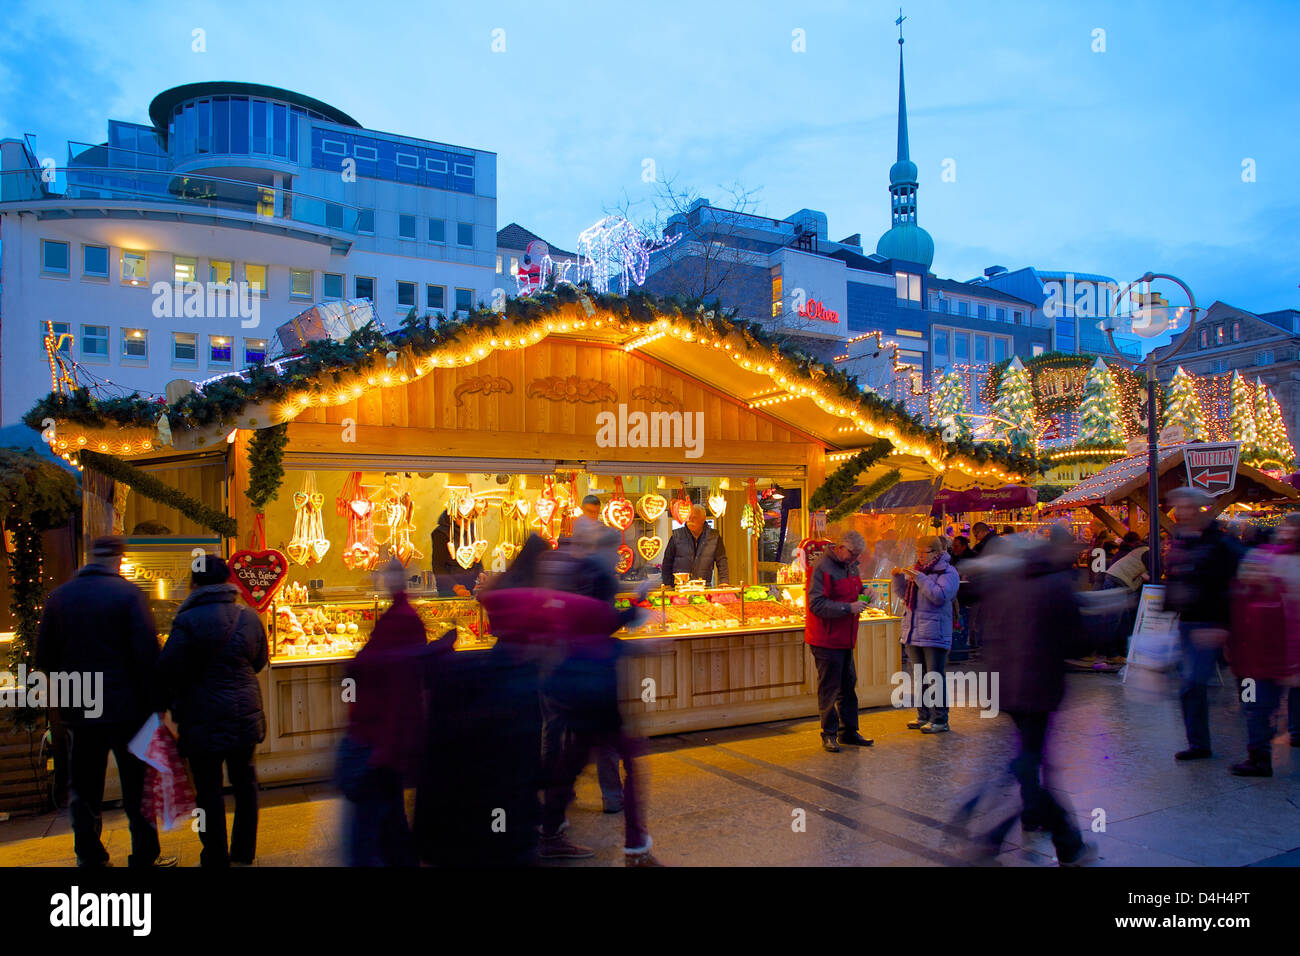 Christmas Market stall, Dortmund, North Rhine-Westphalia, Germany Stock Photo